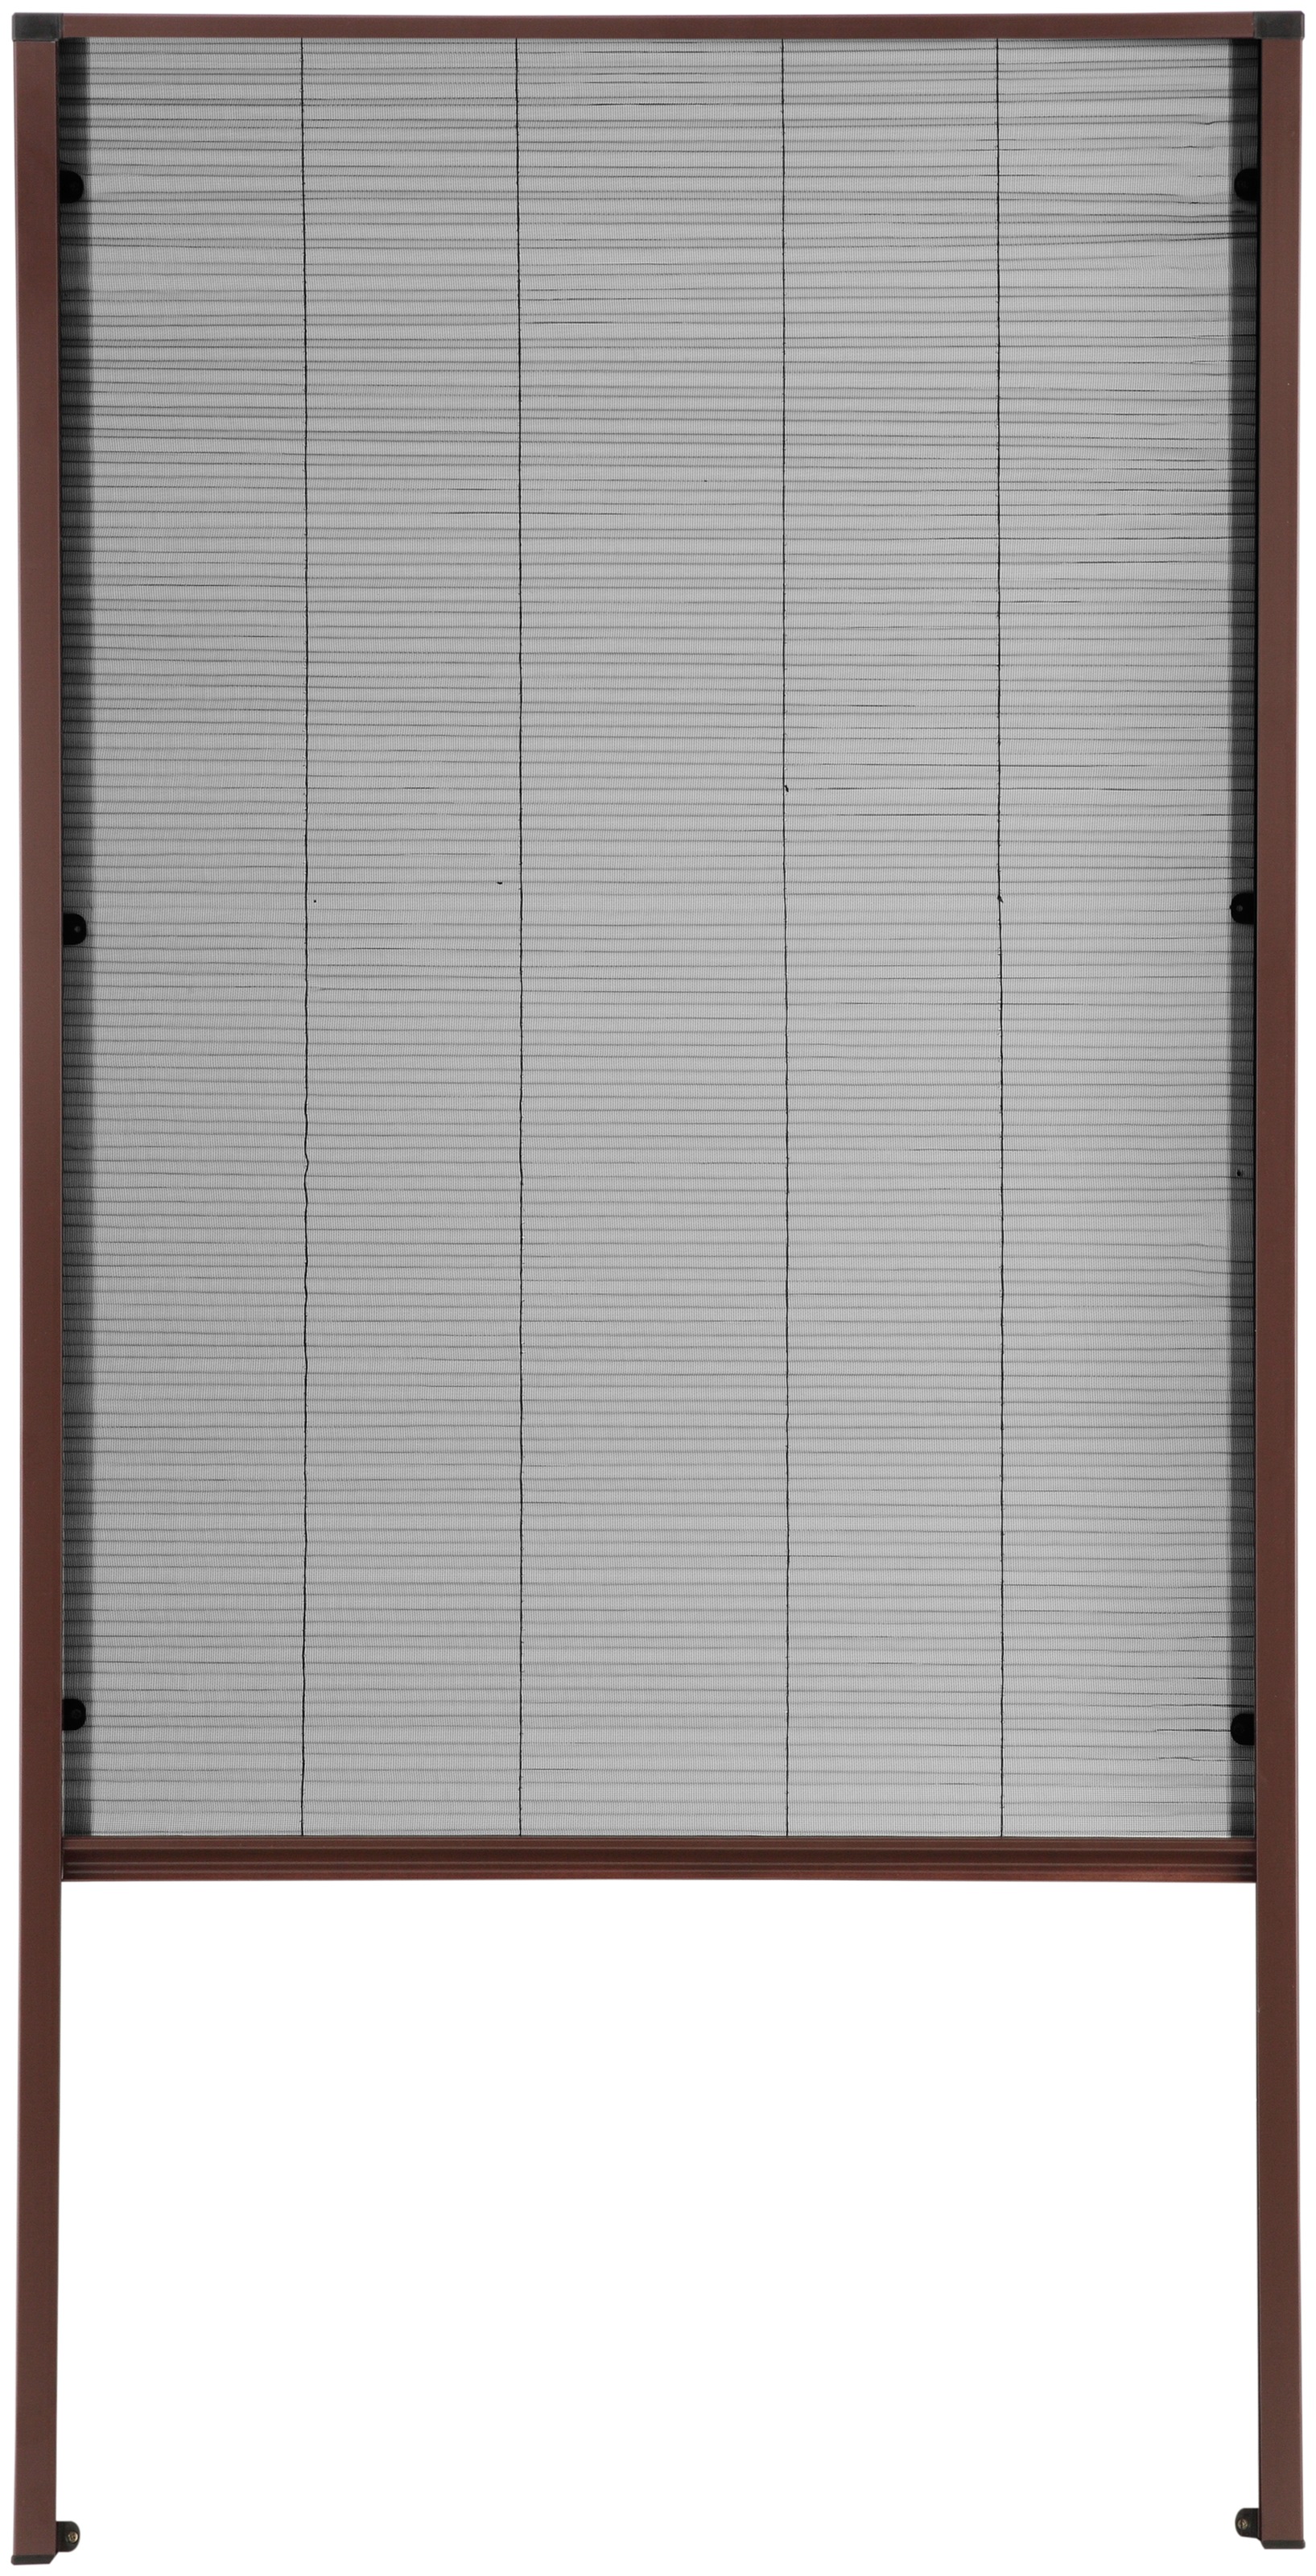 hecht international Insektenschutzrollo "für Dachfenster", transparent, braun/anthrazit, BxH: 80x160 cm